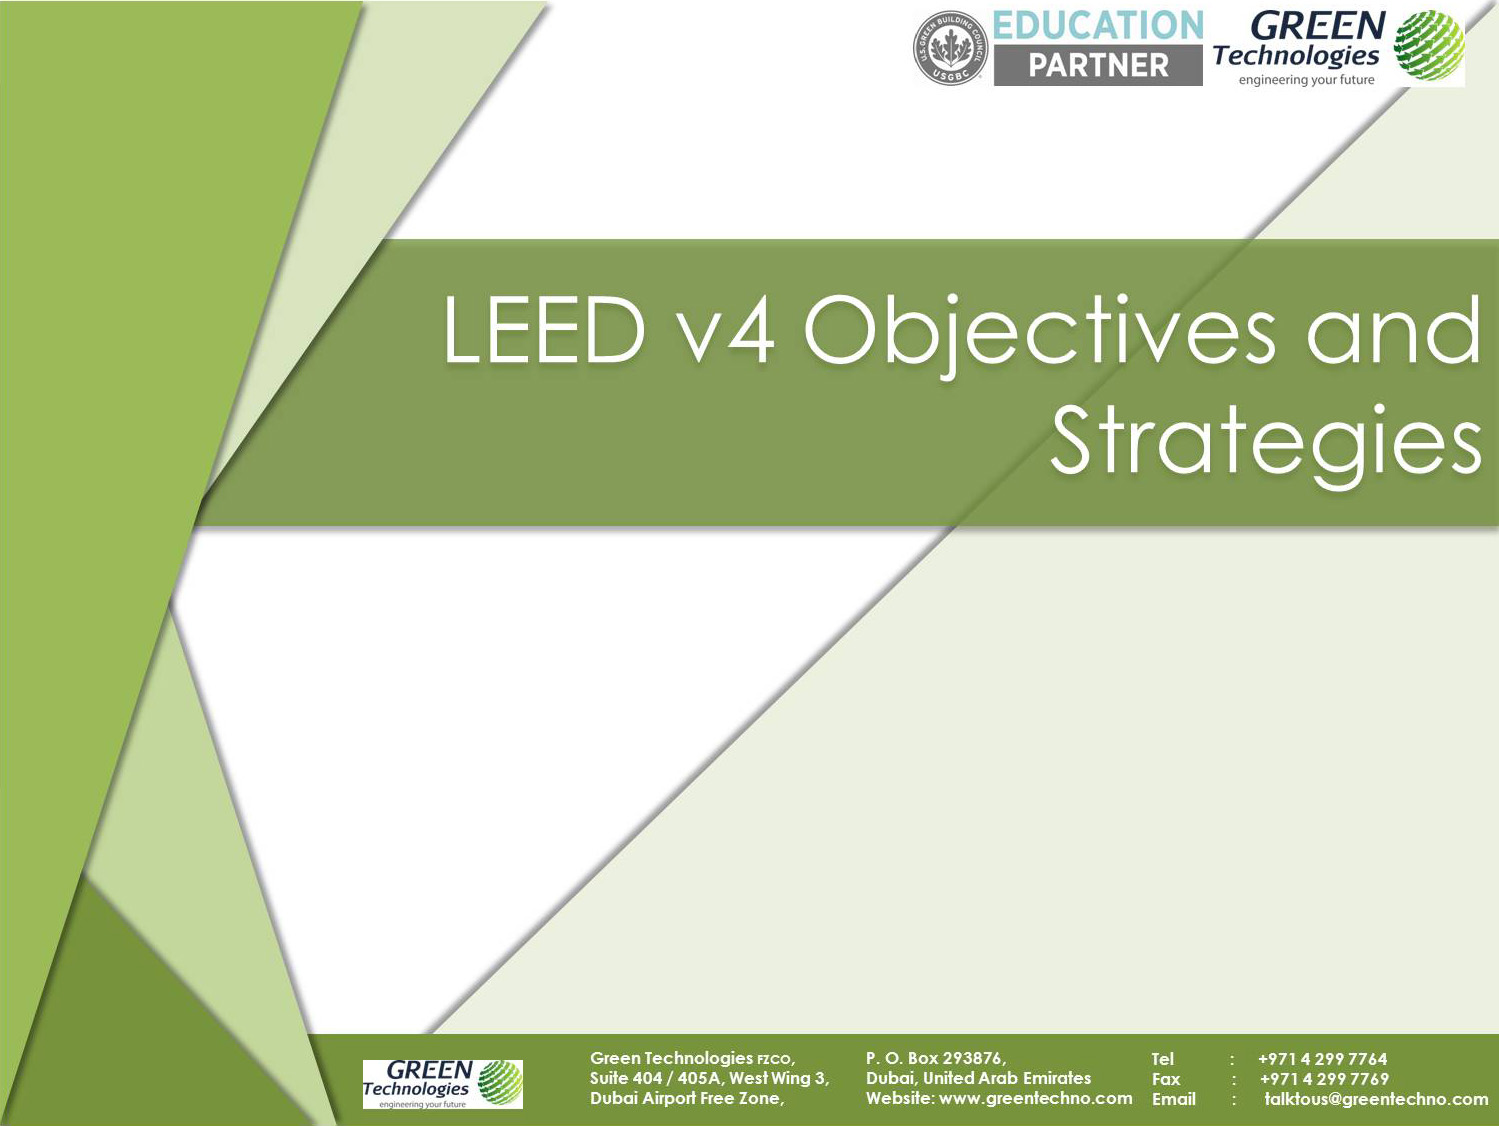 LEED v4 Objectives & Strategies